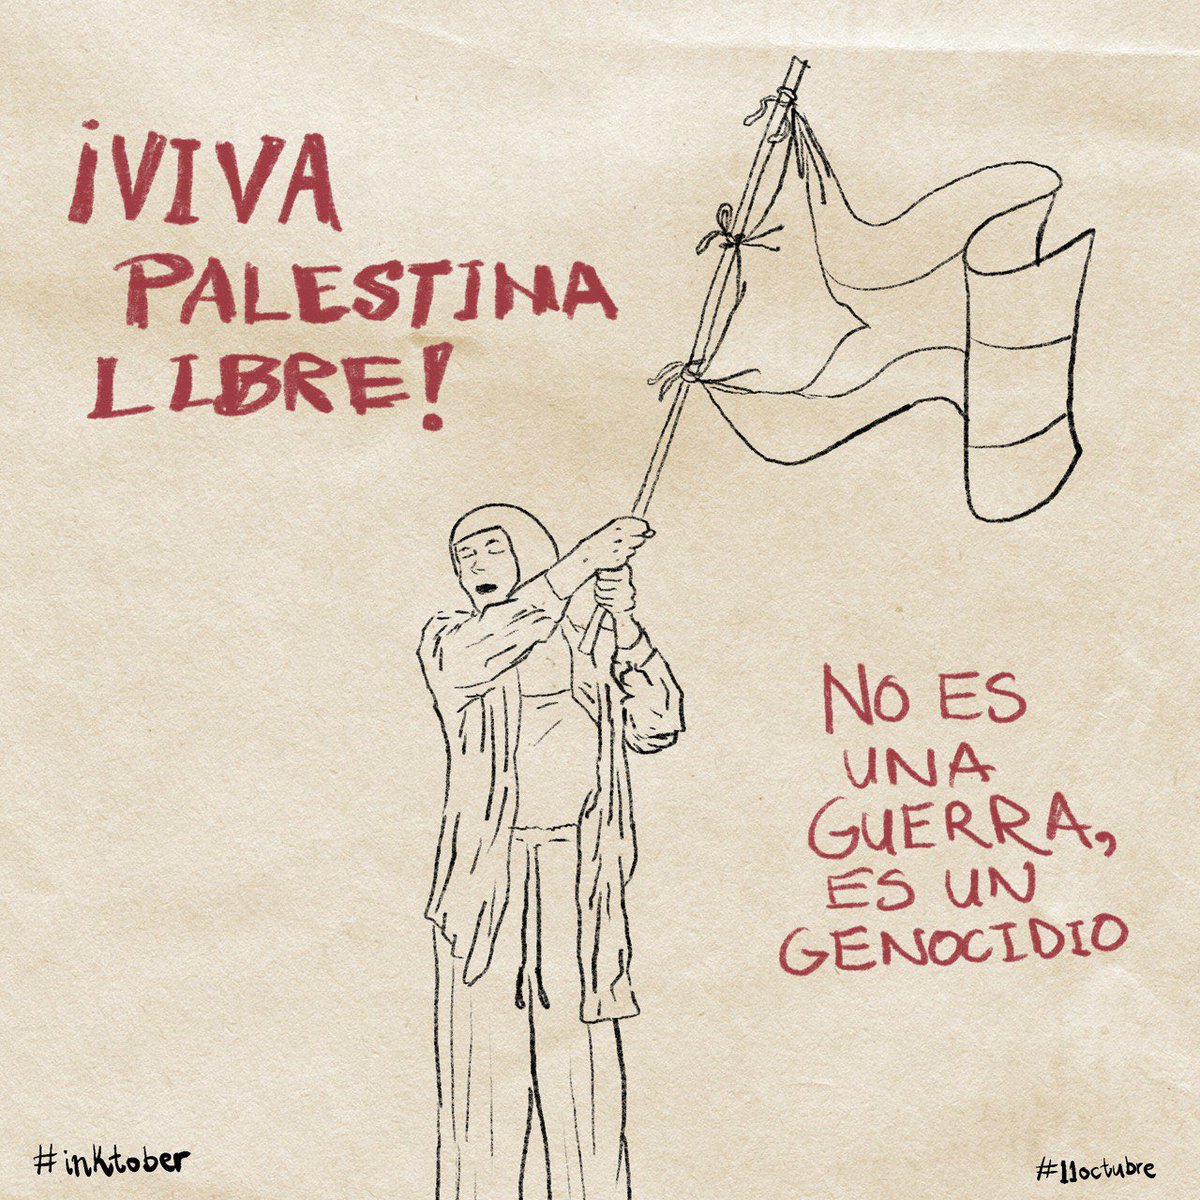 #inktober #11Octubre
#PalestinaLibre #palestine 

No es una guerra, es un genocidio